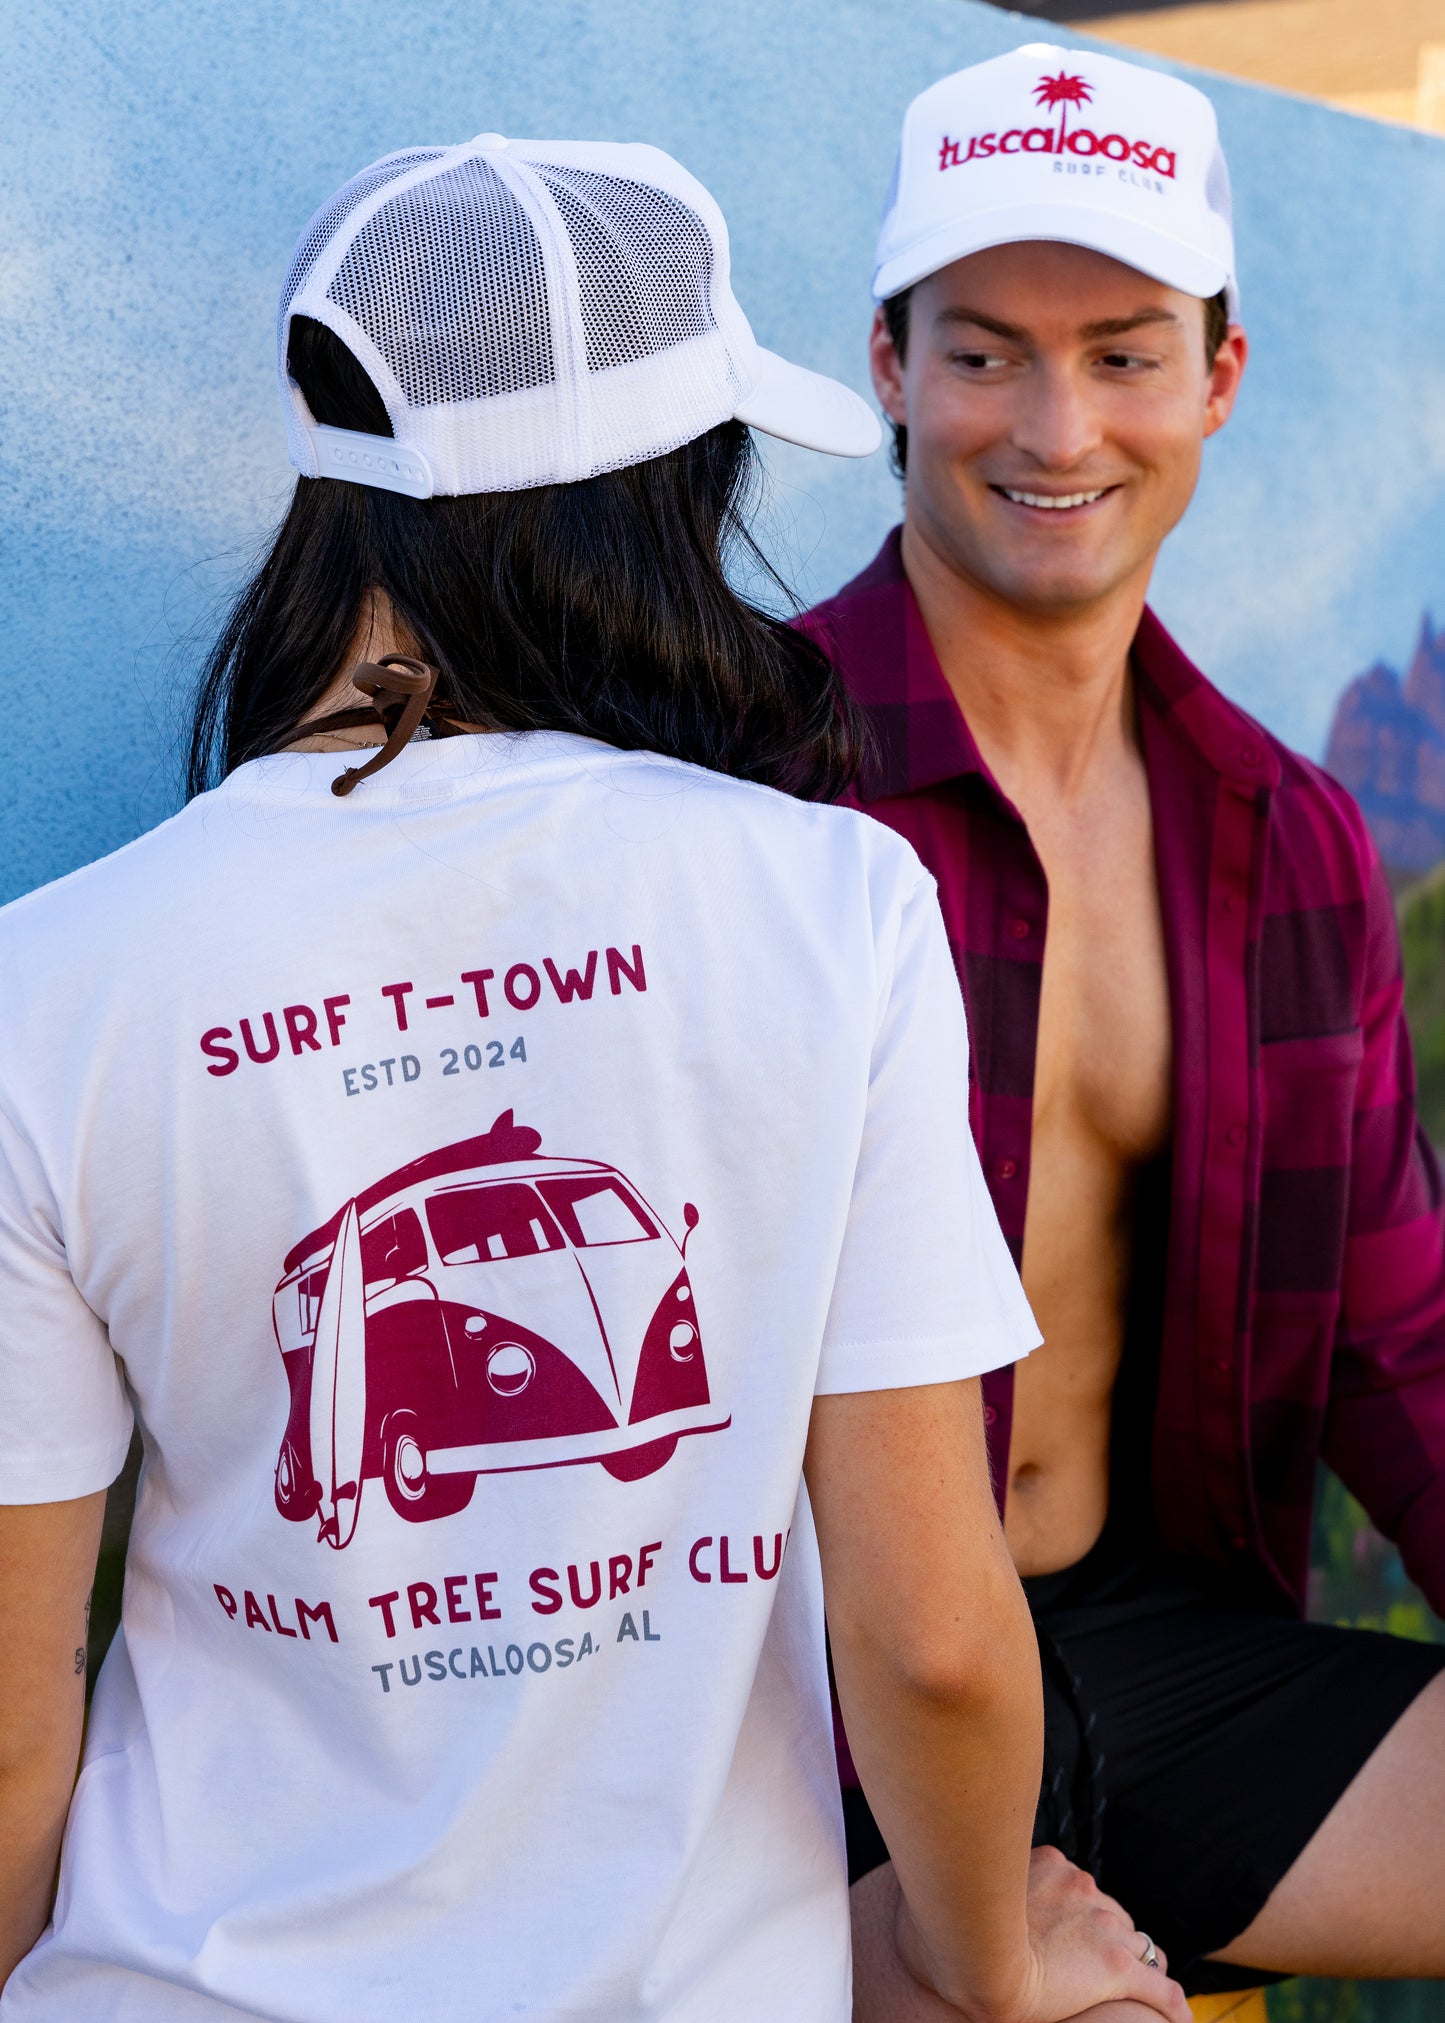 Surf T-Town T-Shirt